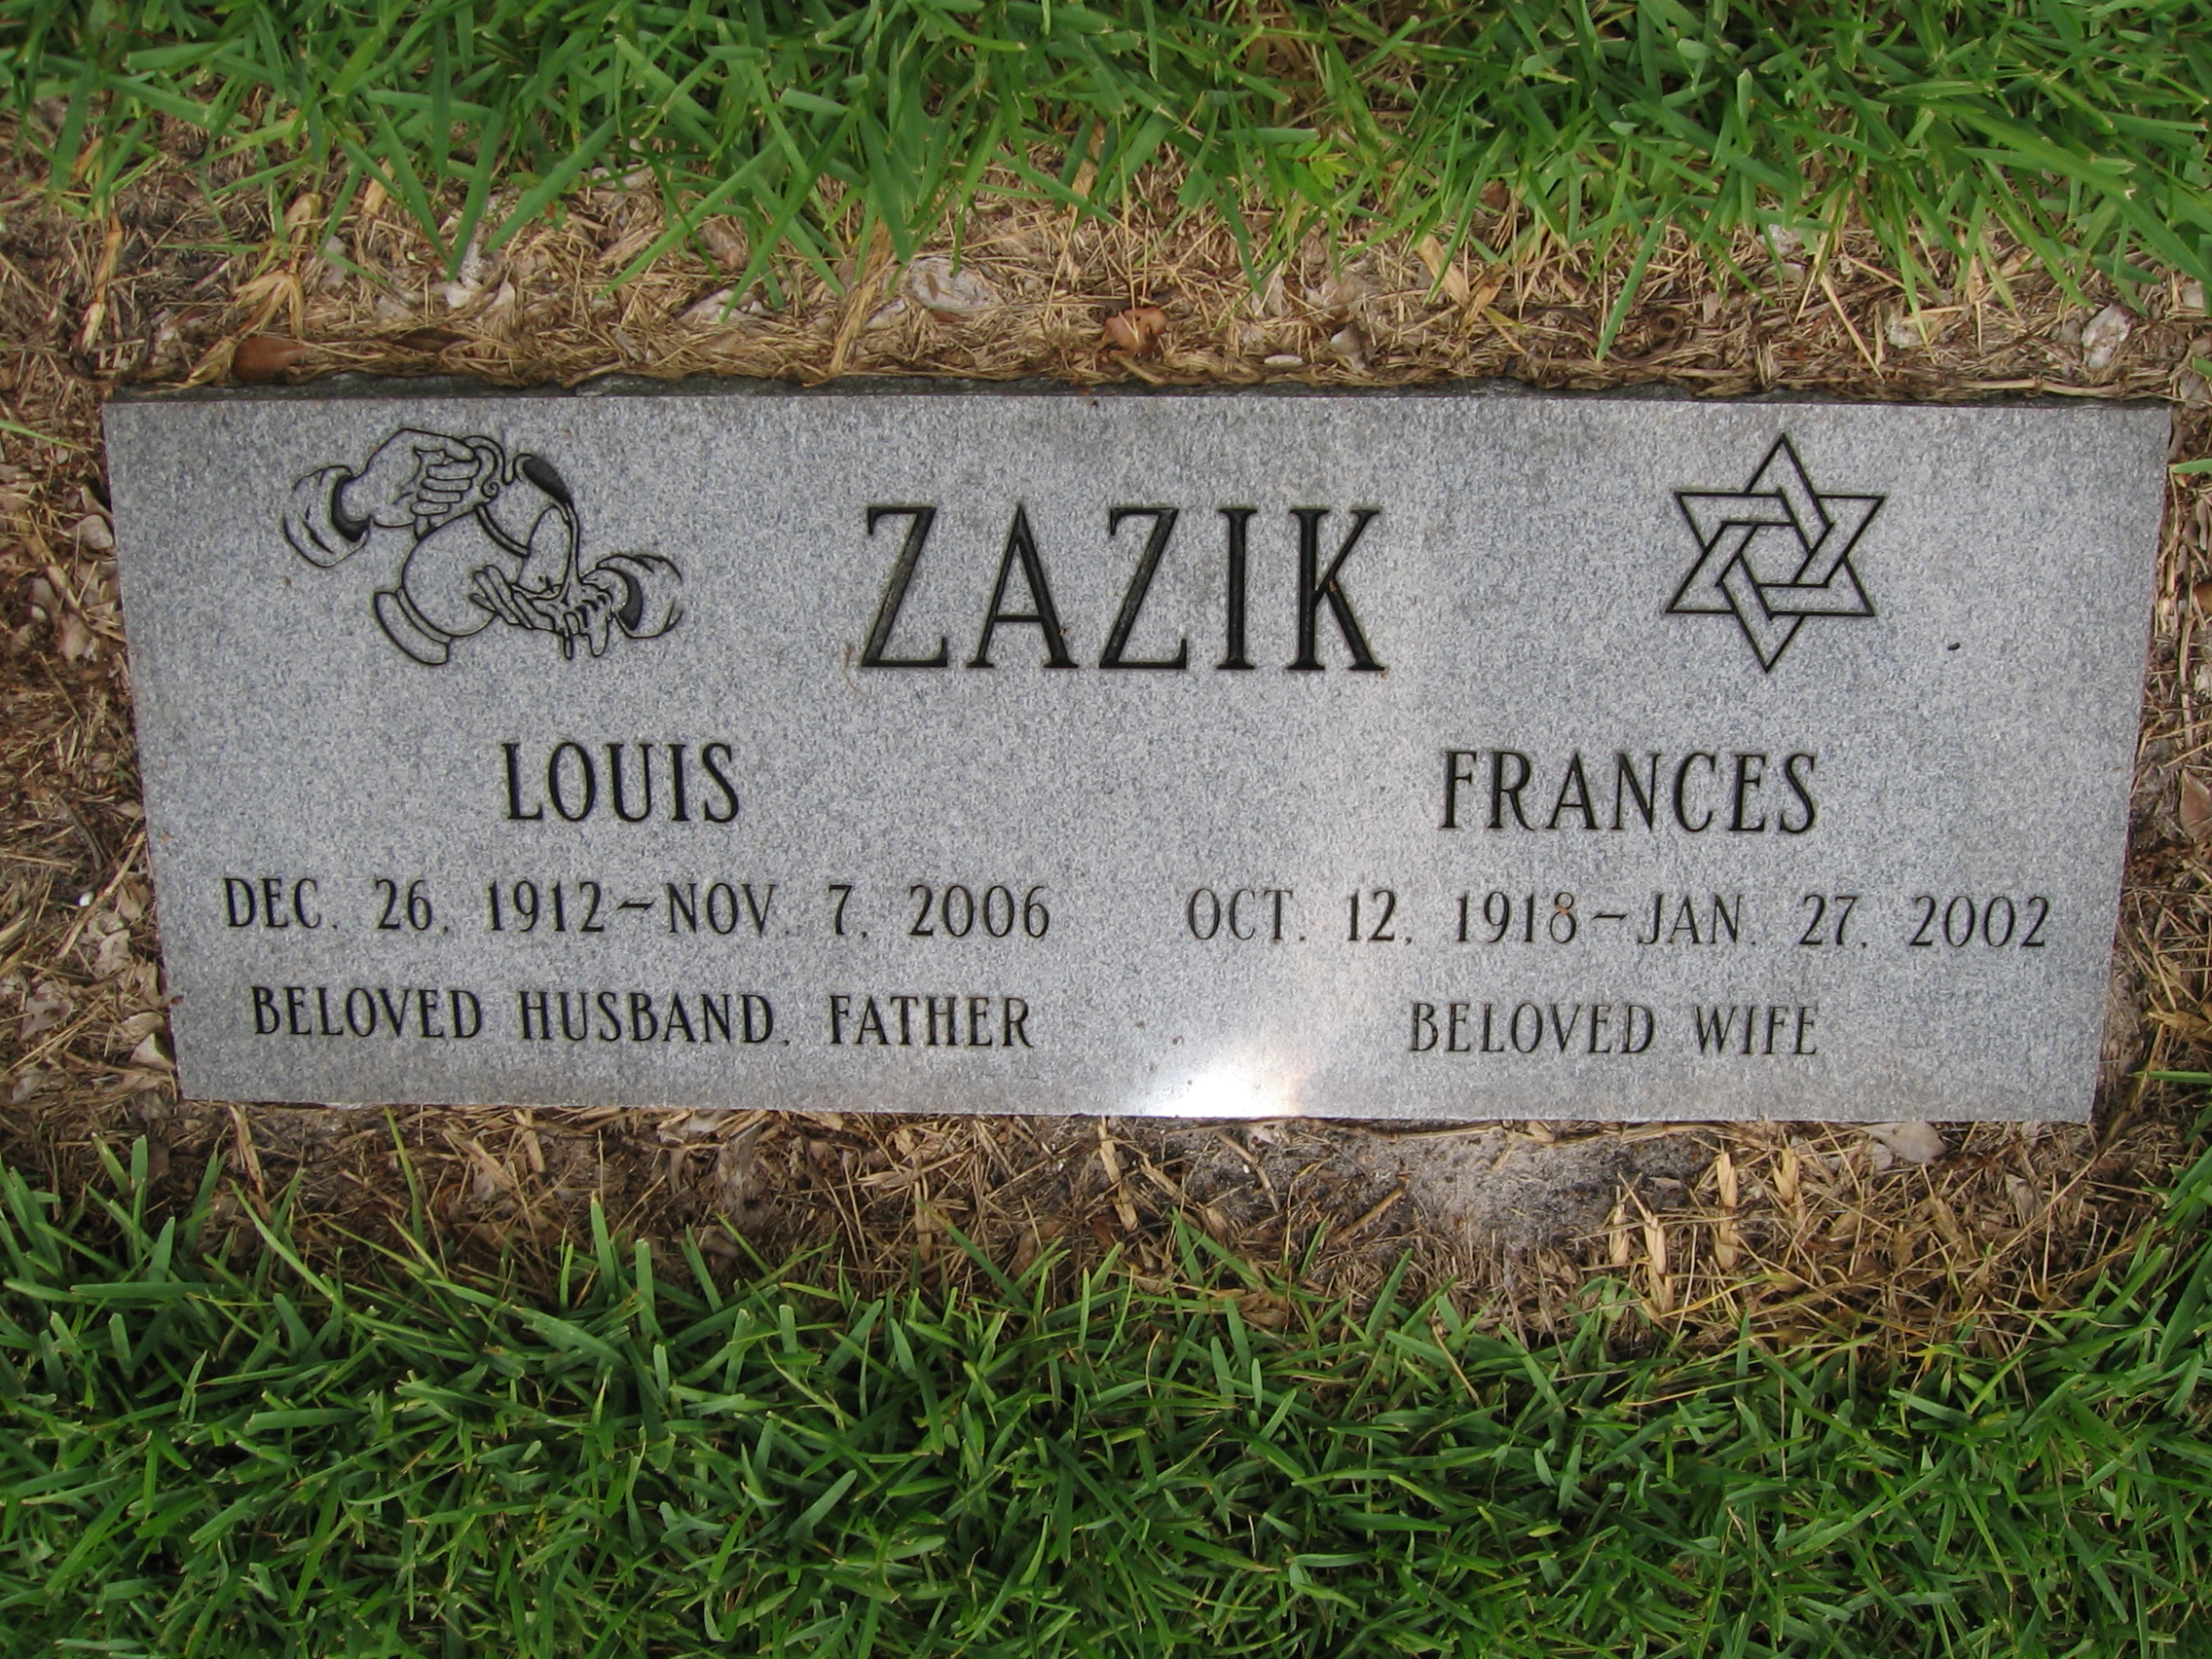 Louis Zazik